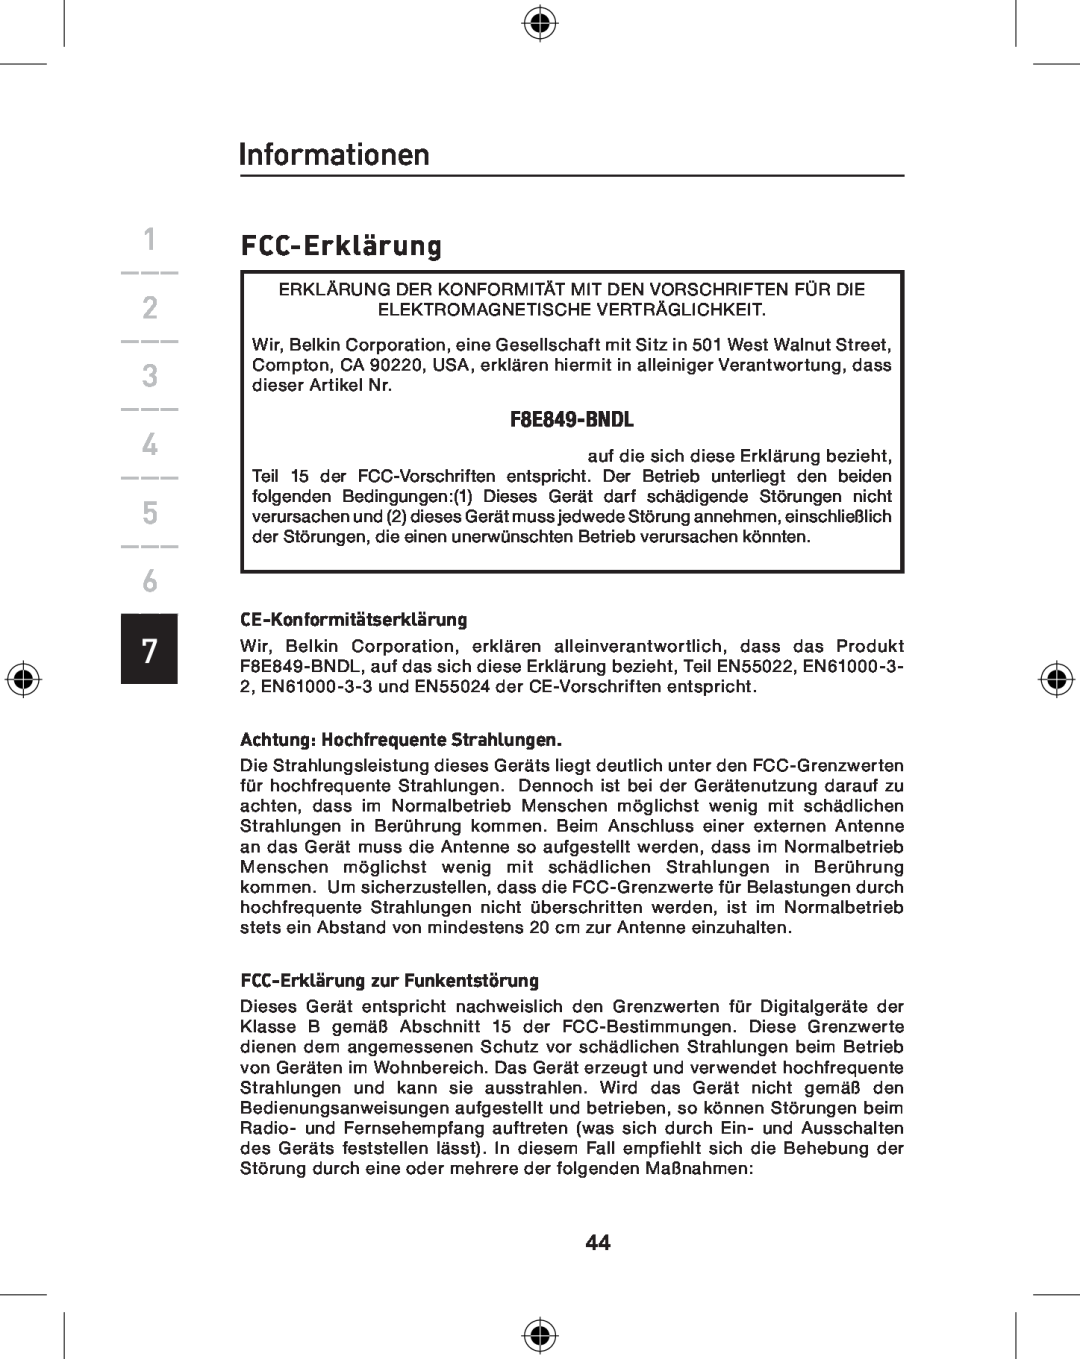 Belkin P74775UK Informationen, FCC-Erklärung, F8E849-BNDL, CE-Konformitätserklärung, Achtung Hochfrequente Strahlungen 